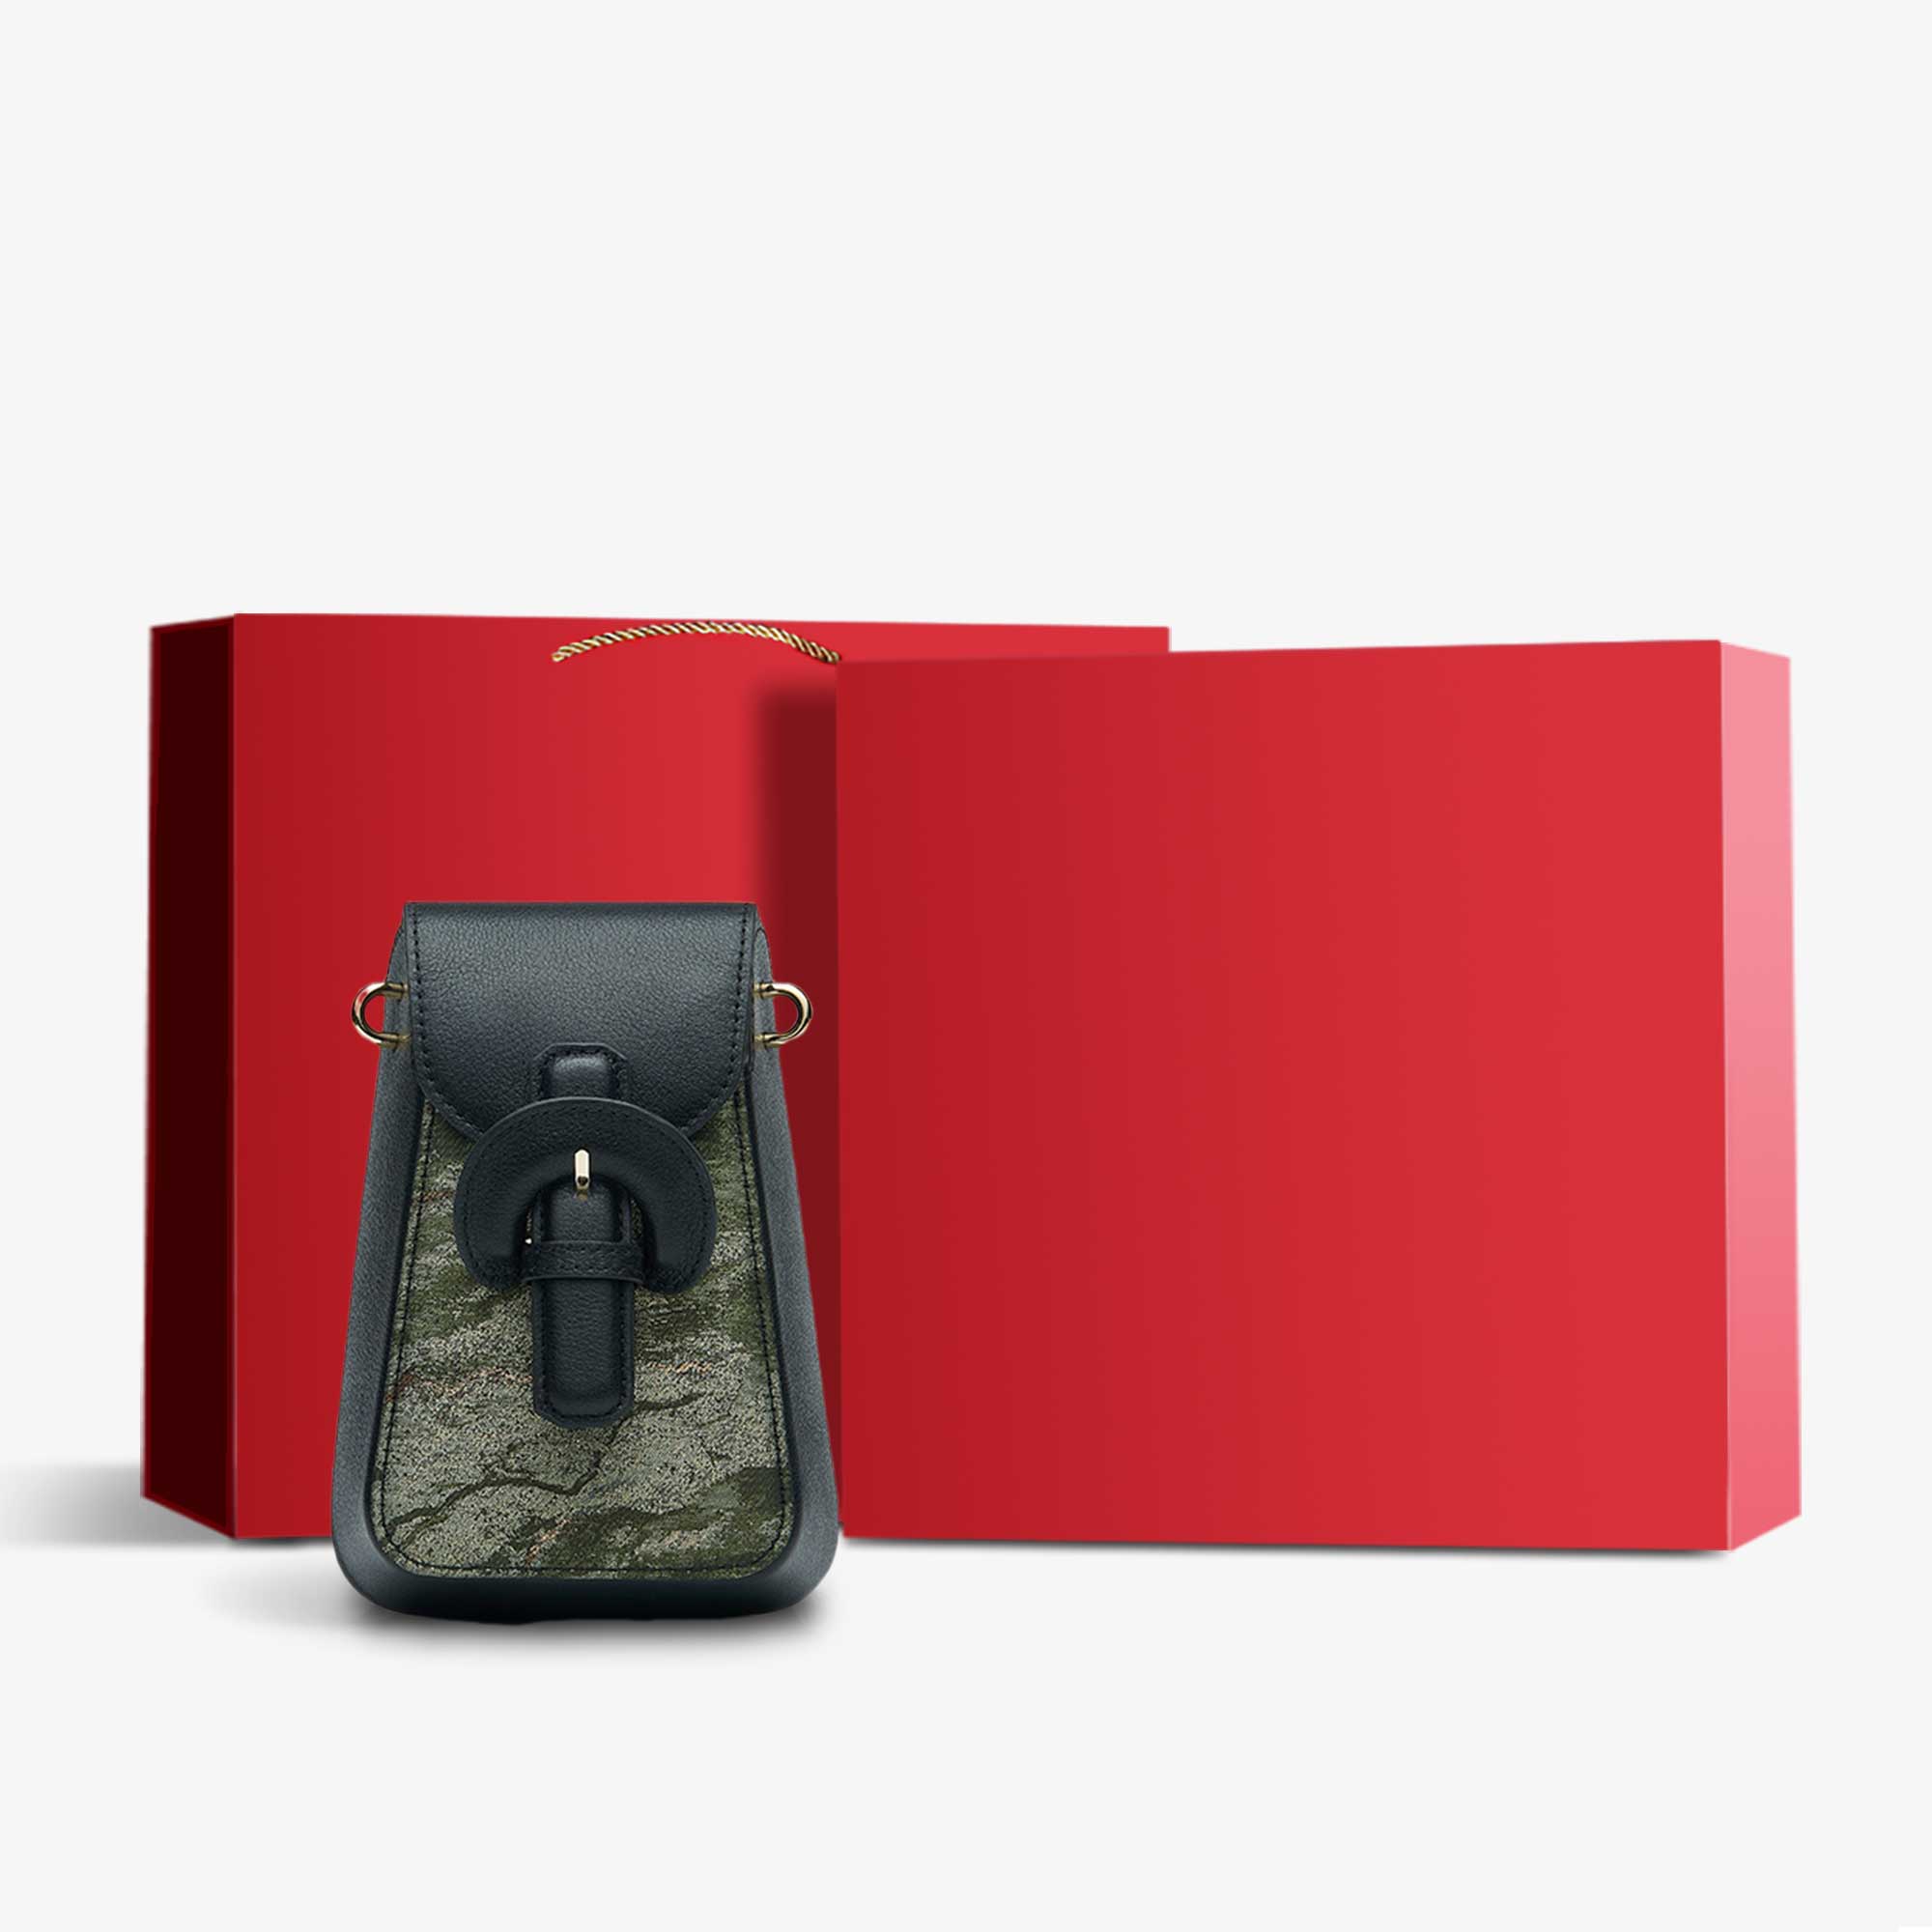 Woven Brocade Vintage Shoulder Phone Bag-Handbag-SinoCultural-Black-Bag with Gift Box-P210601-g-SinoCultural